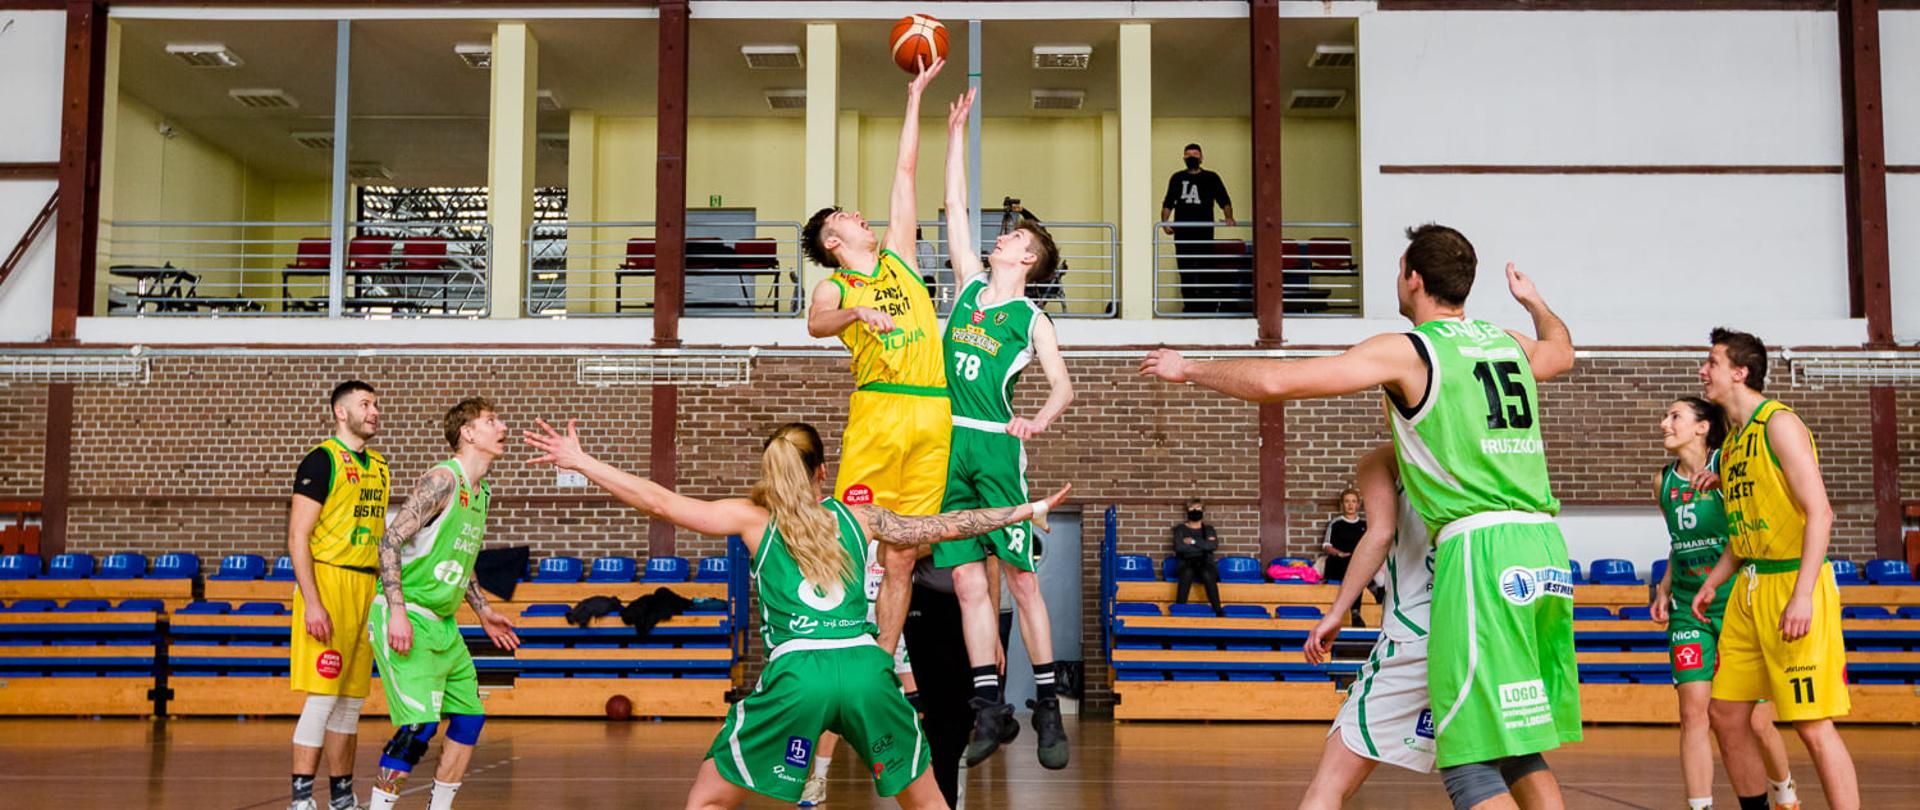 Na zdjęciu dwie drużyny koszykarzy. Drużyna w żółtych i drużyna w zielonych strojach rozgrywają mecz koszykówki. 